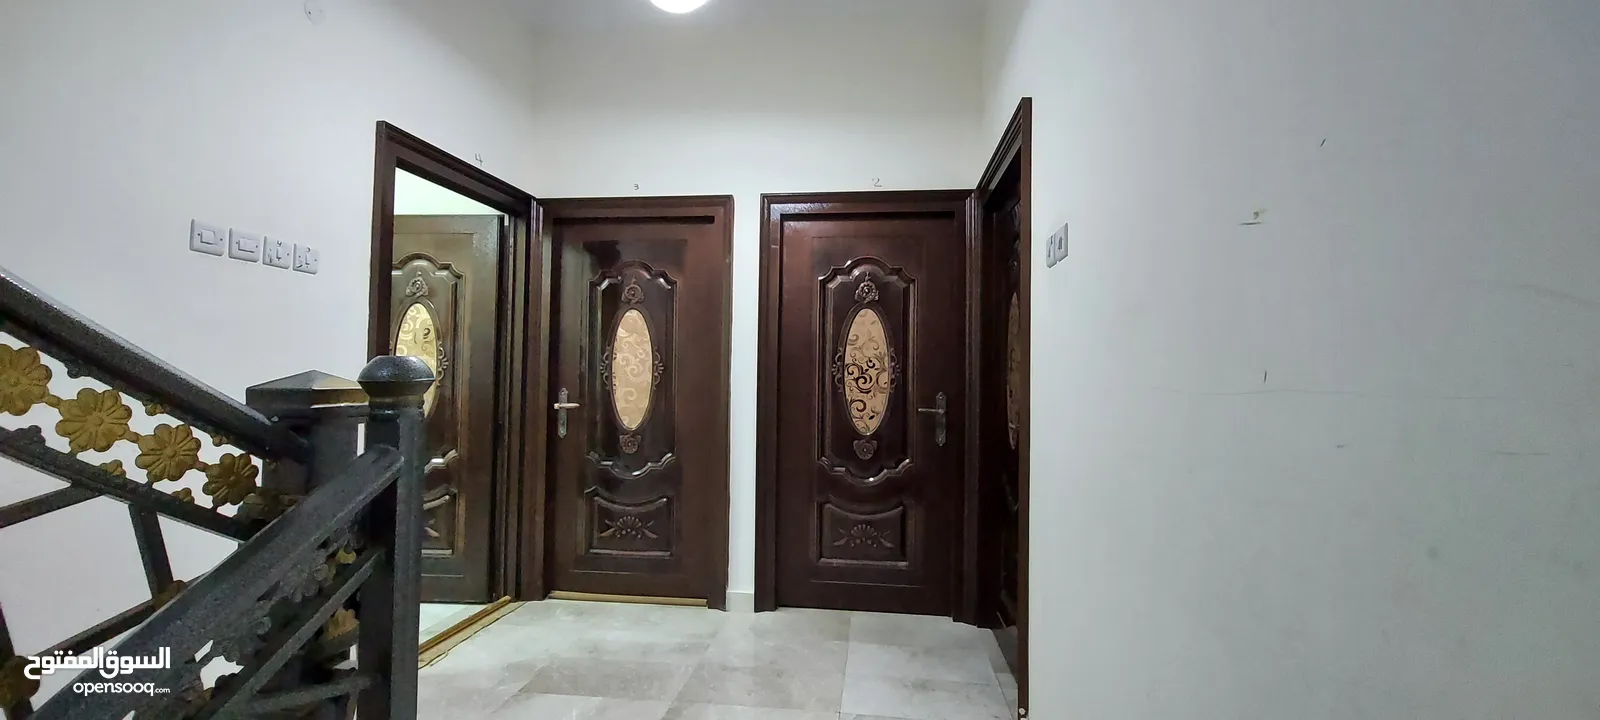 شقق للإيجار صحار الهمبار الجديد Apartments for rent in Sohar, New Hambar